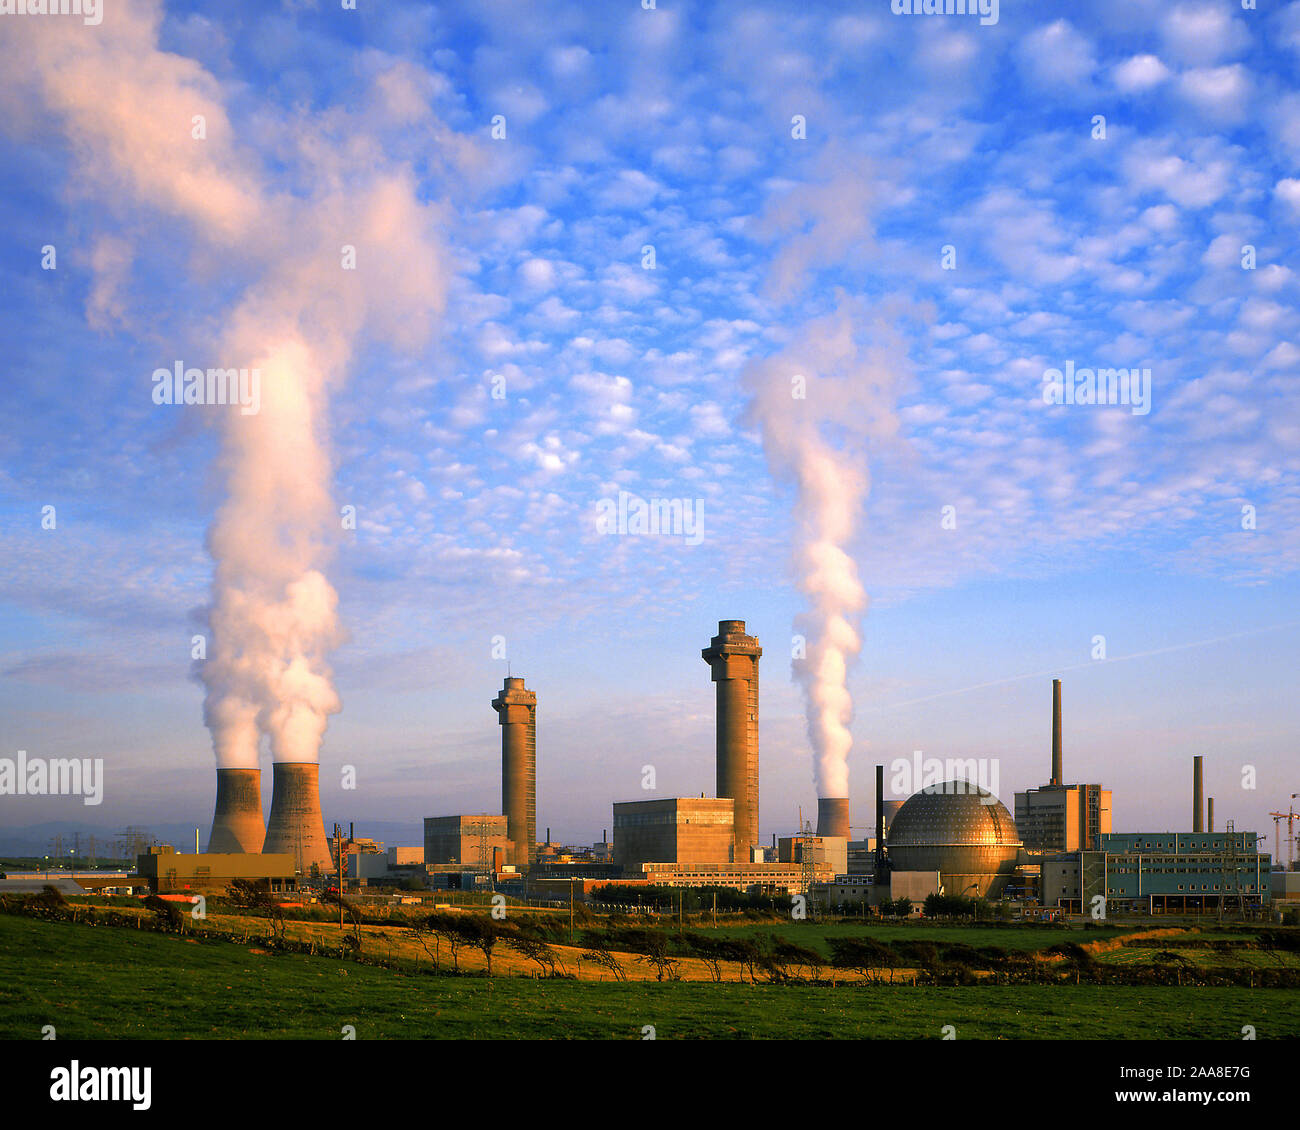 Sellafield. atomare Wiederaufbereitungsanlage, England Stock Photo